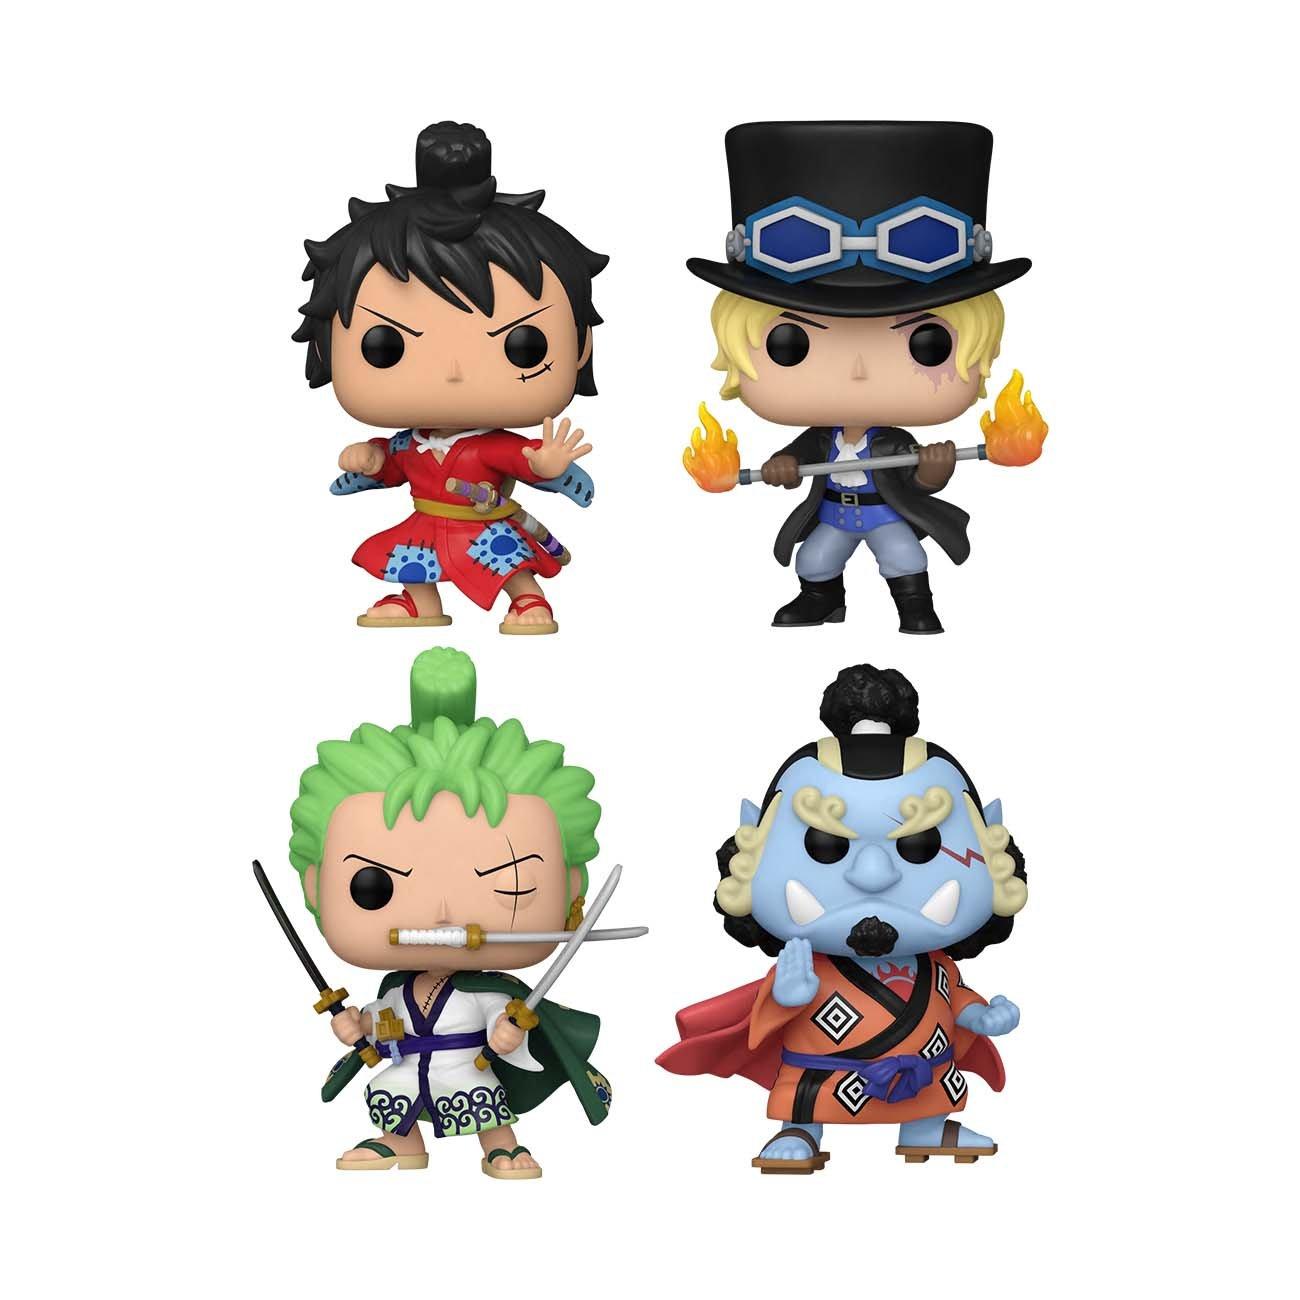 Funko POP! One Piece Luffytaro, Sabo, Roronoa Zoro, and Jinbe Vinyl Figure  Set 4-Pack GameStop Exclusive | GameStop